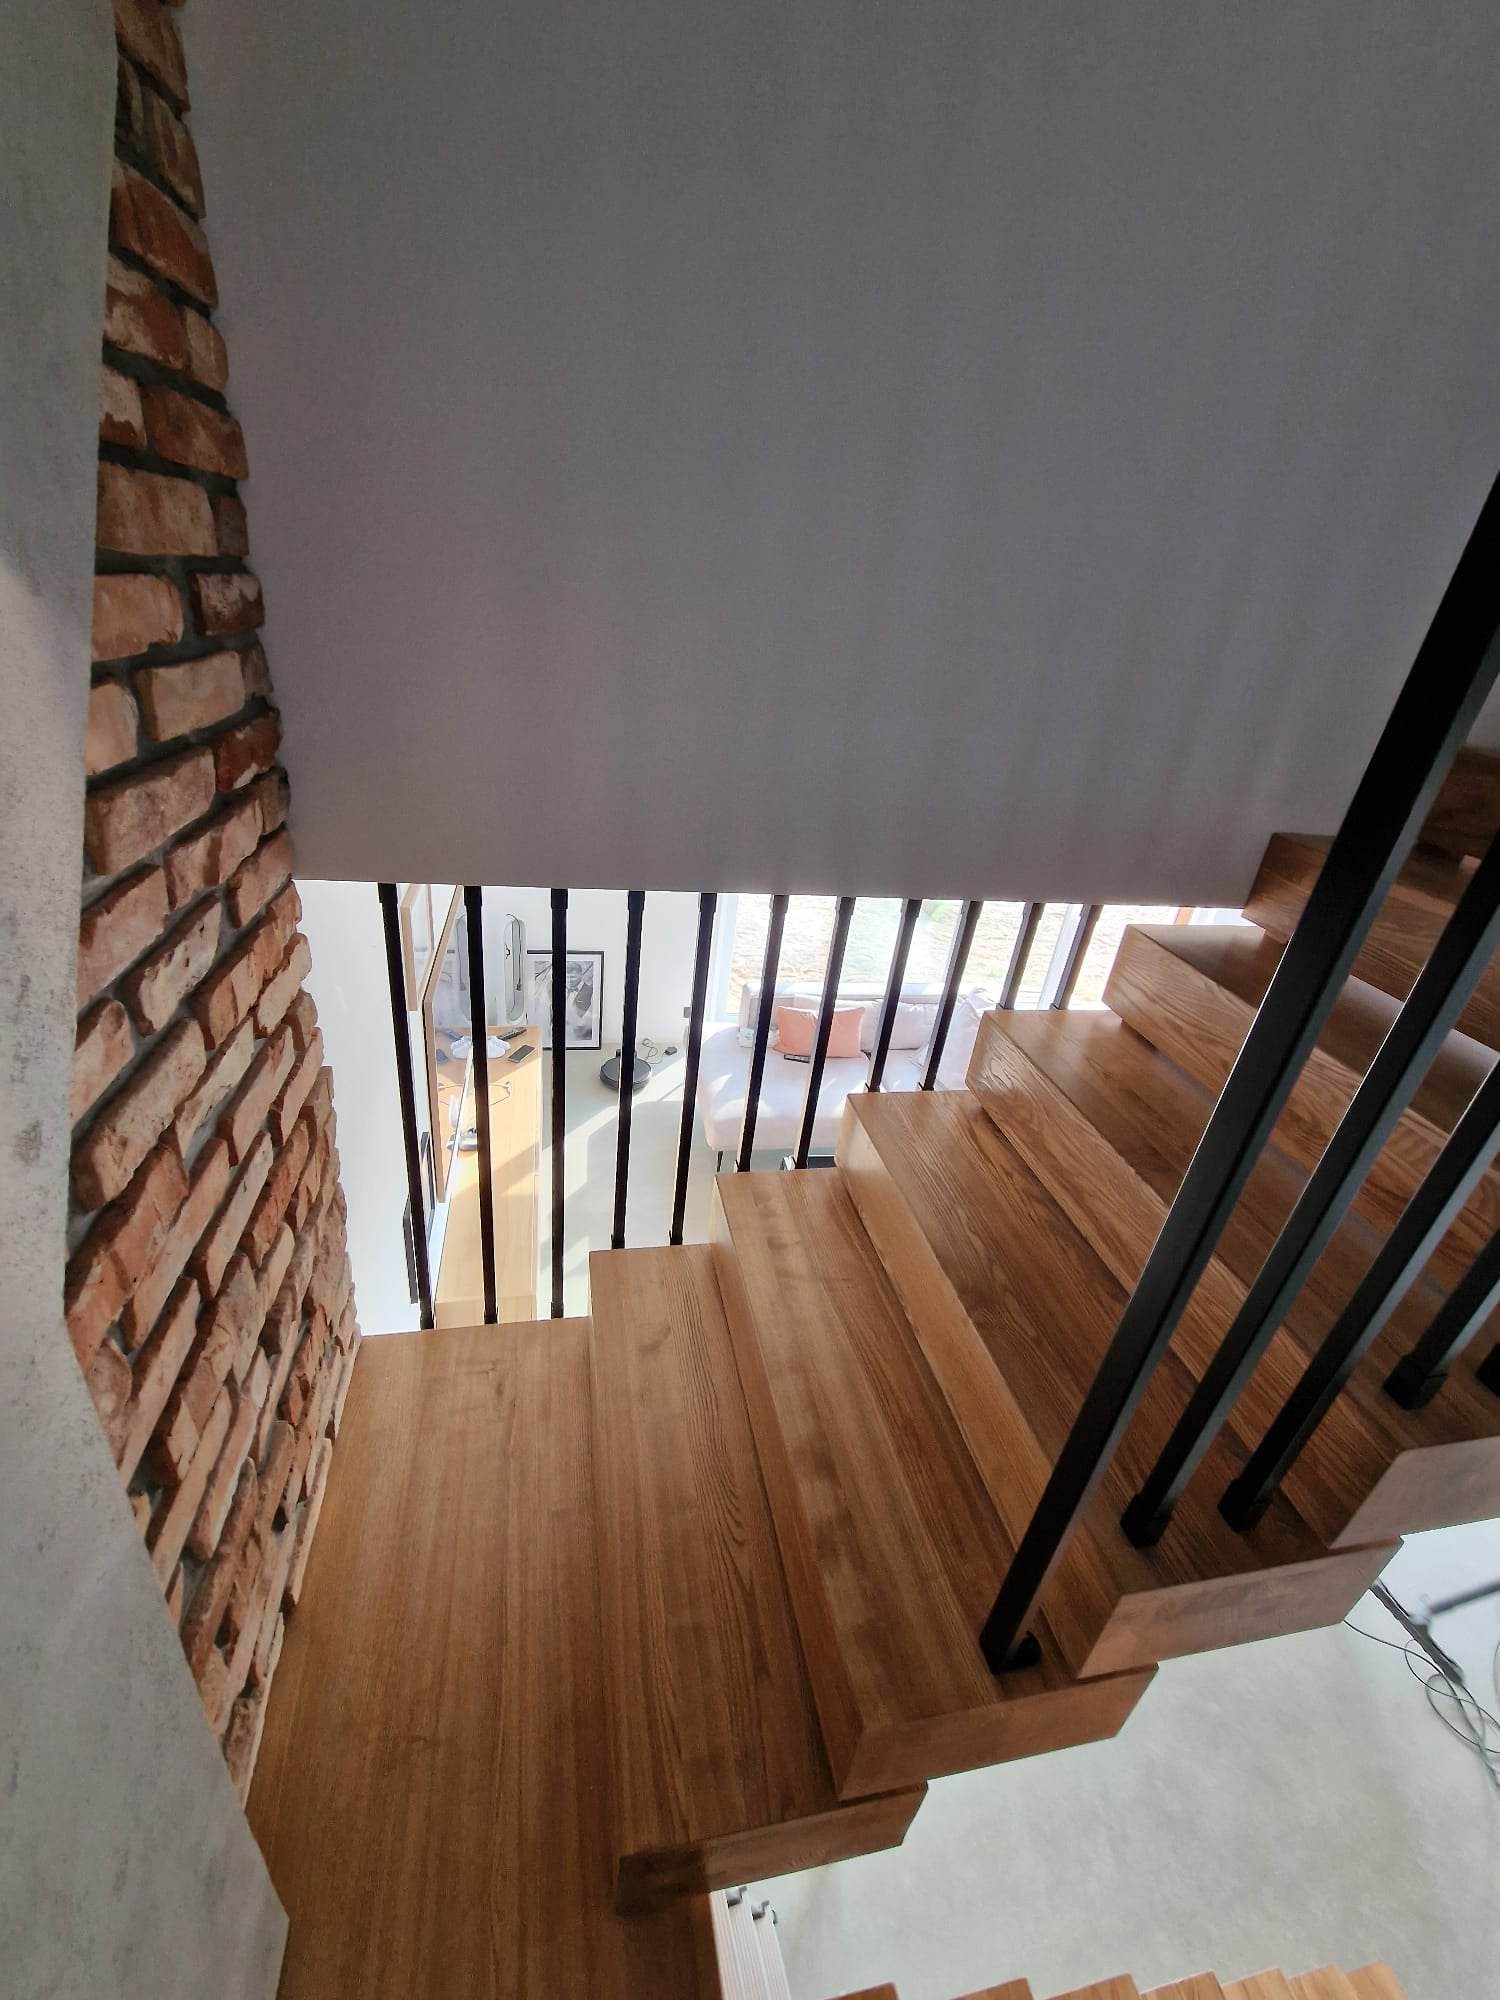 schody wewnętrzne drewniane, balustrada malowana proszkowo